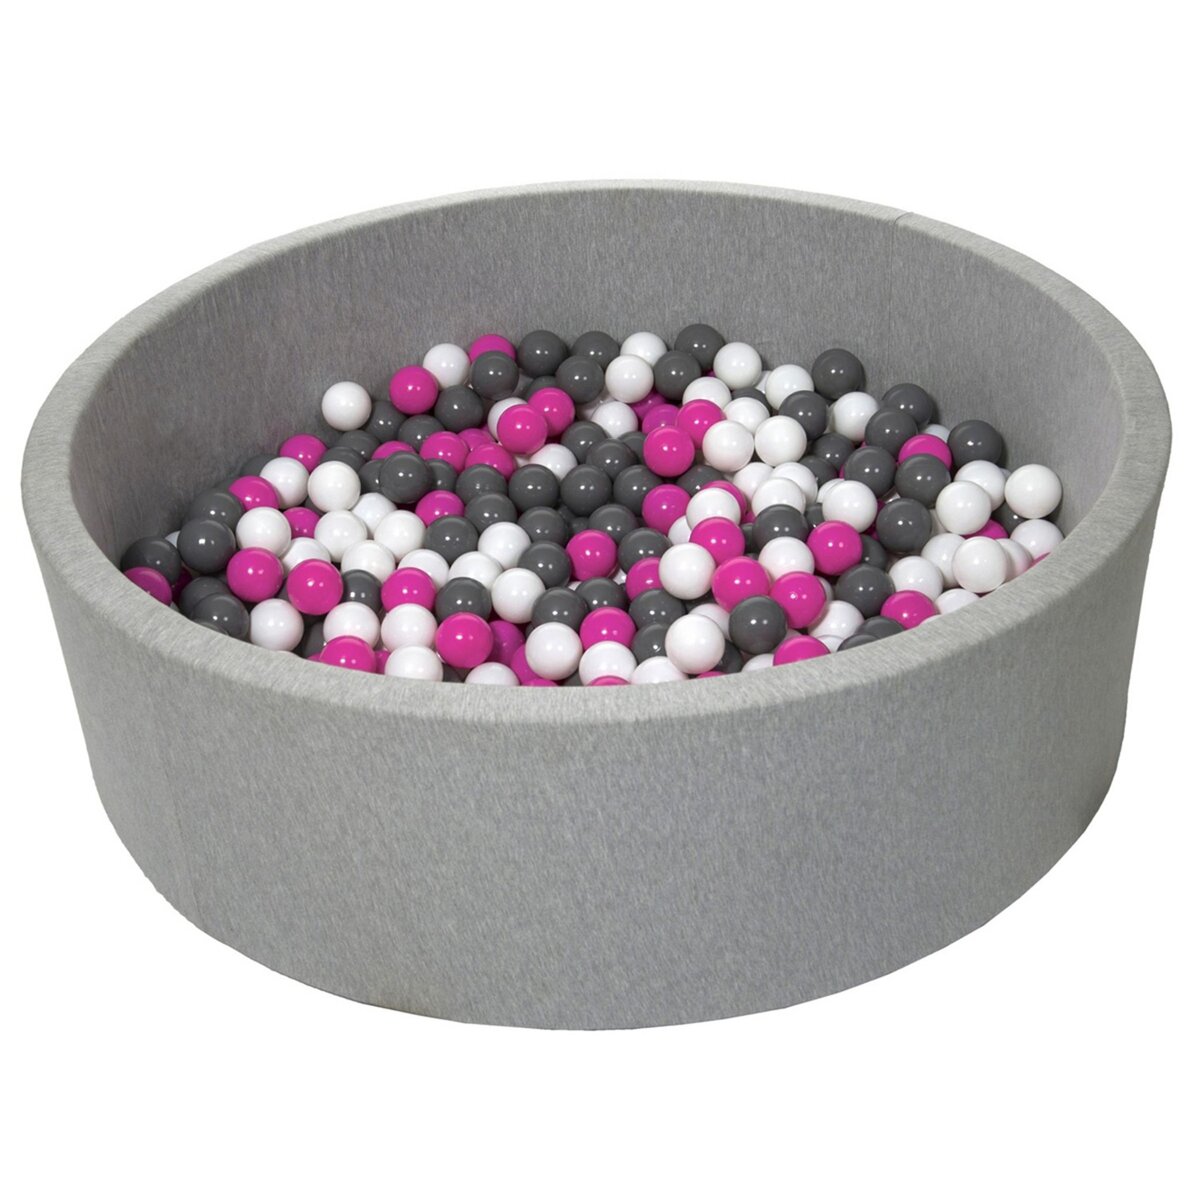  Piscine à balles pour enfant, env.125 cm, Aire de jeu + 600 balles blanc, rose, gris